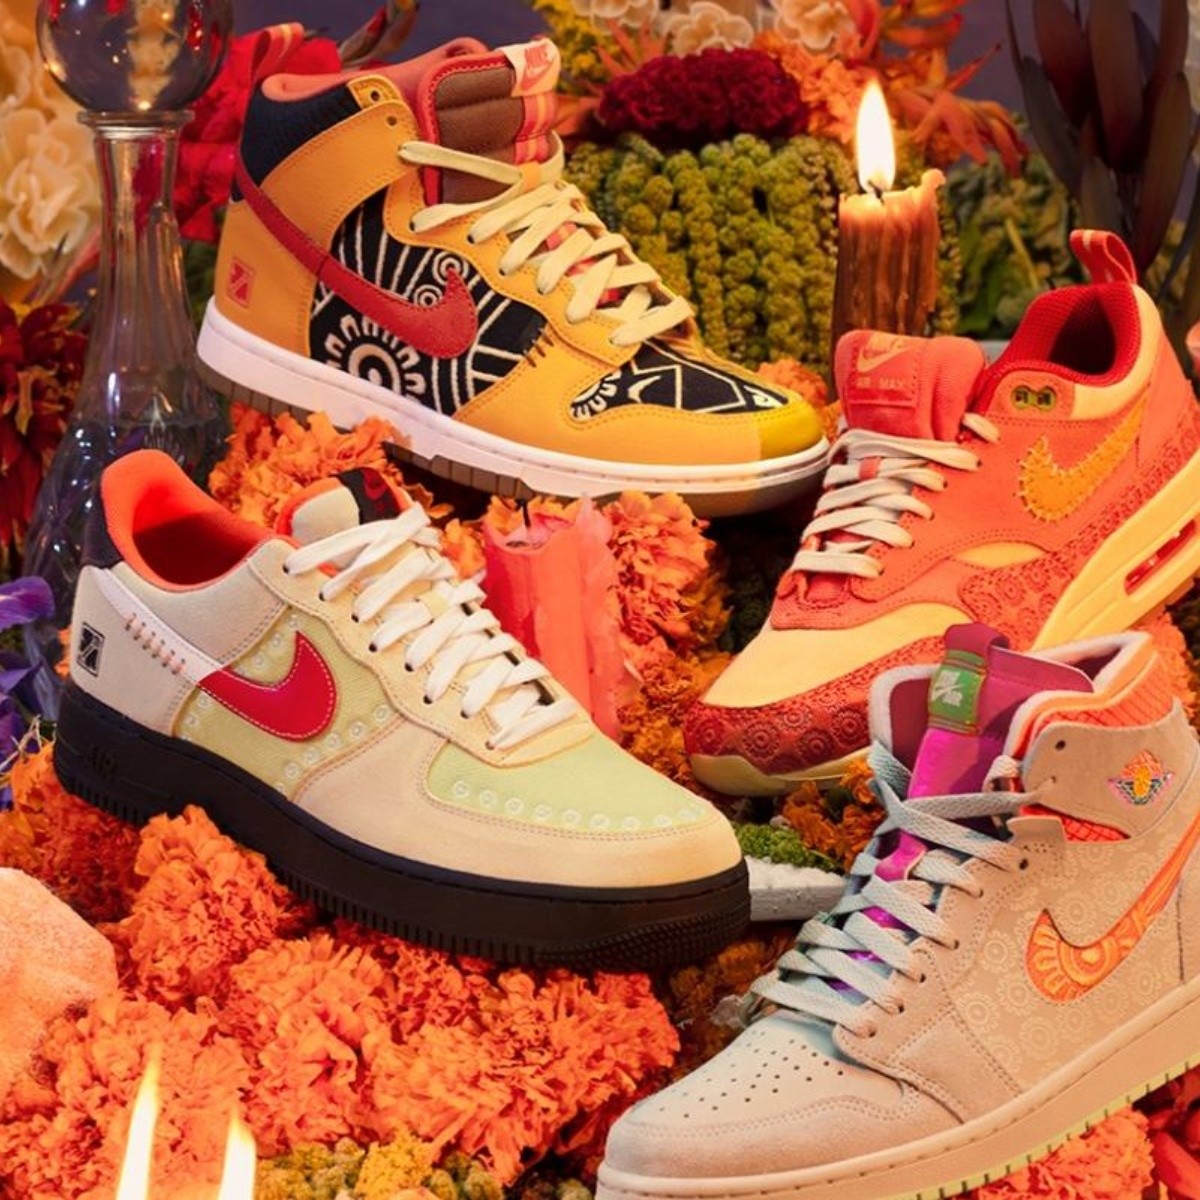 Guau dieta profundamente Nike celebra el Día de Muertos 2022 con su colección “Somos Familia”,  presentando los clásicos Air Jordan | El Informador